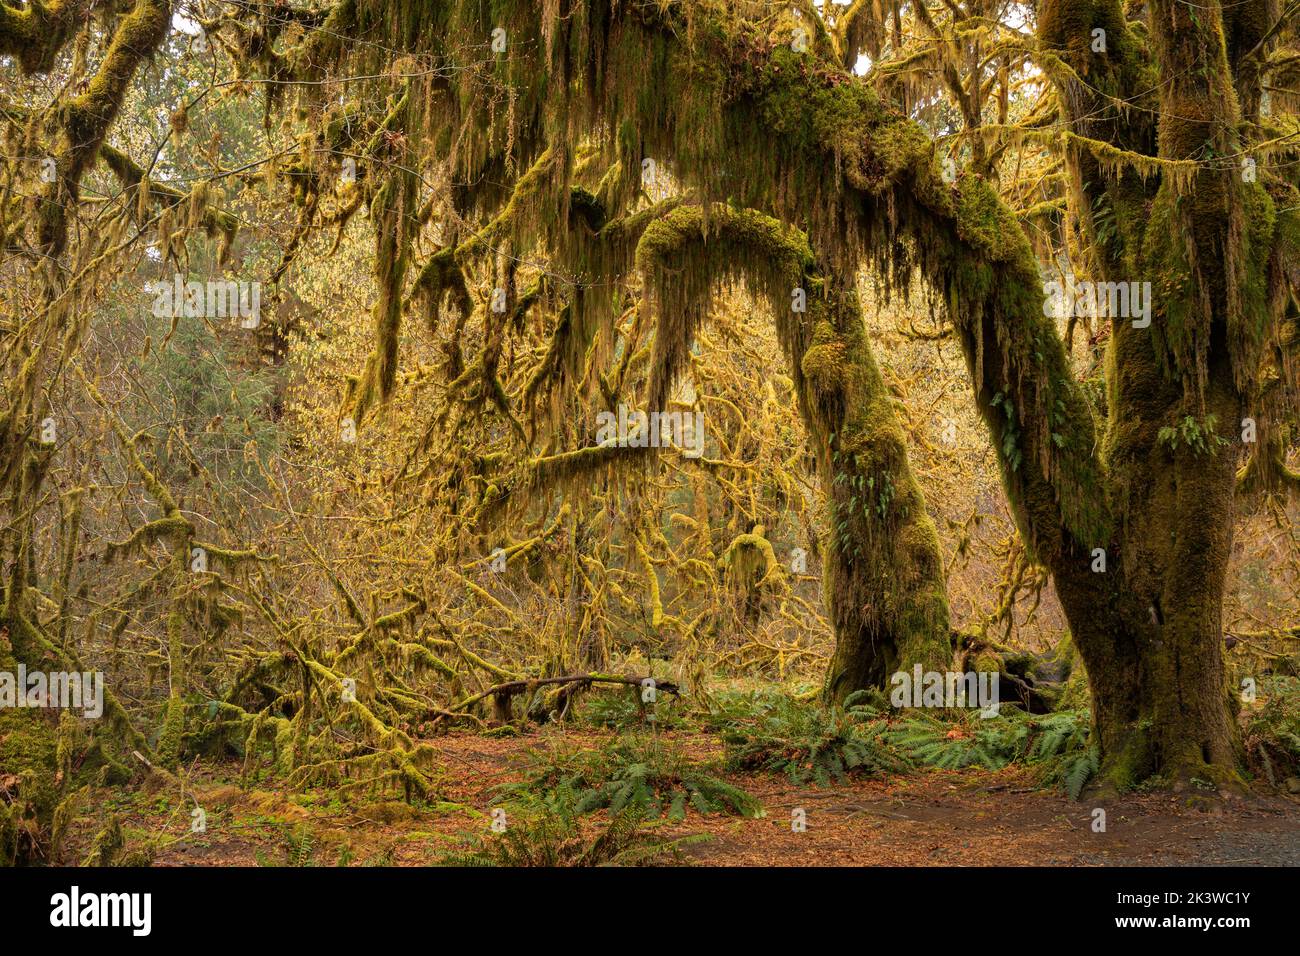 WA22095-00...WASHINGTON - Acero coperto di muschio nella Hall of Mosses, parte della foresta pluviale Hoh, nel Parco Nazionale Olimpico. Foto Stock